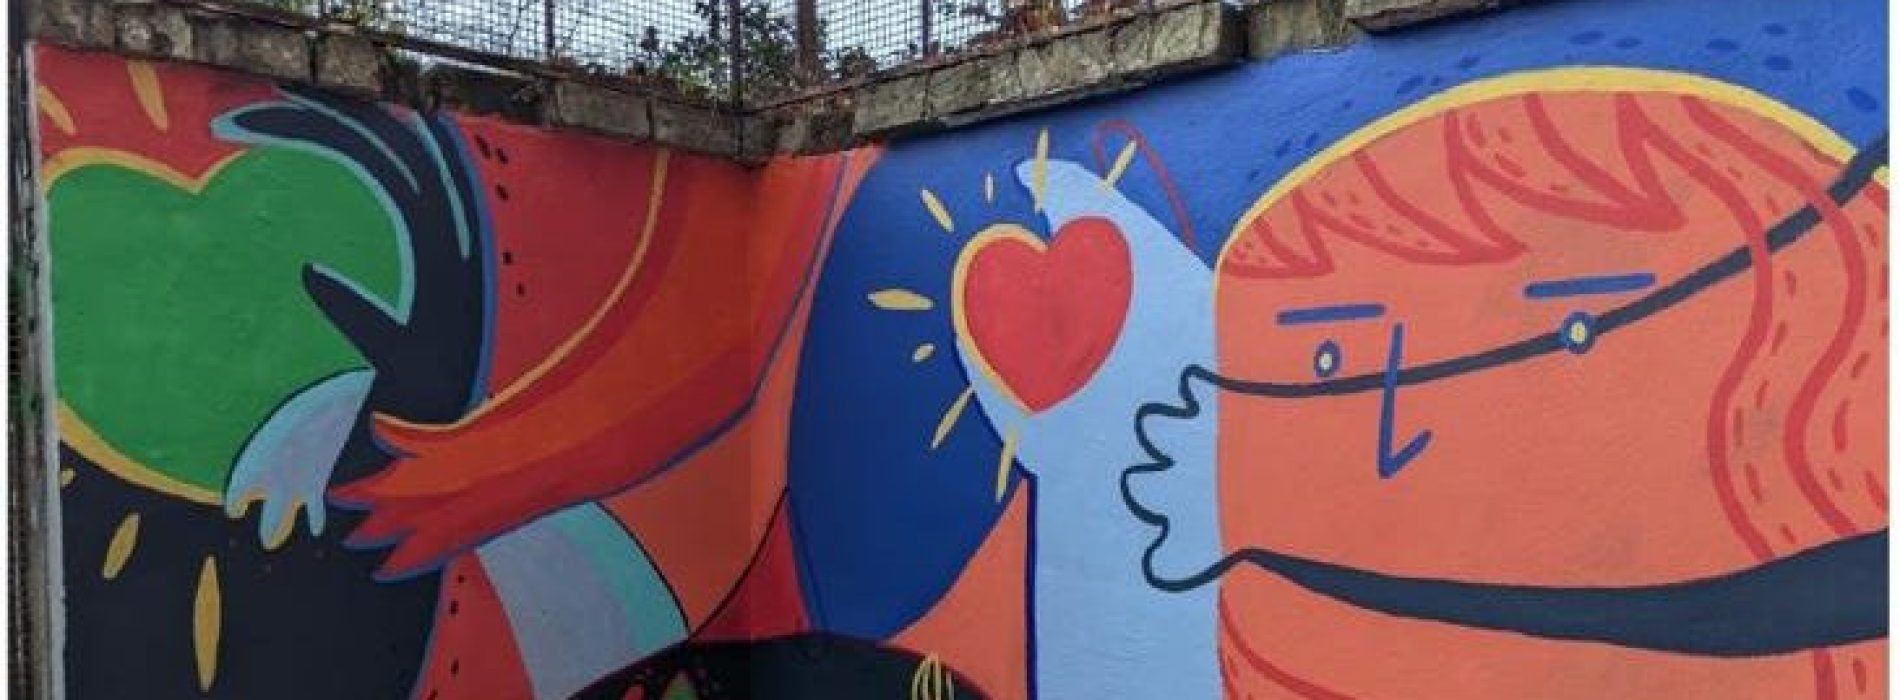 La creatività corre sui pattini, street art nella Villa Giaquinto